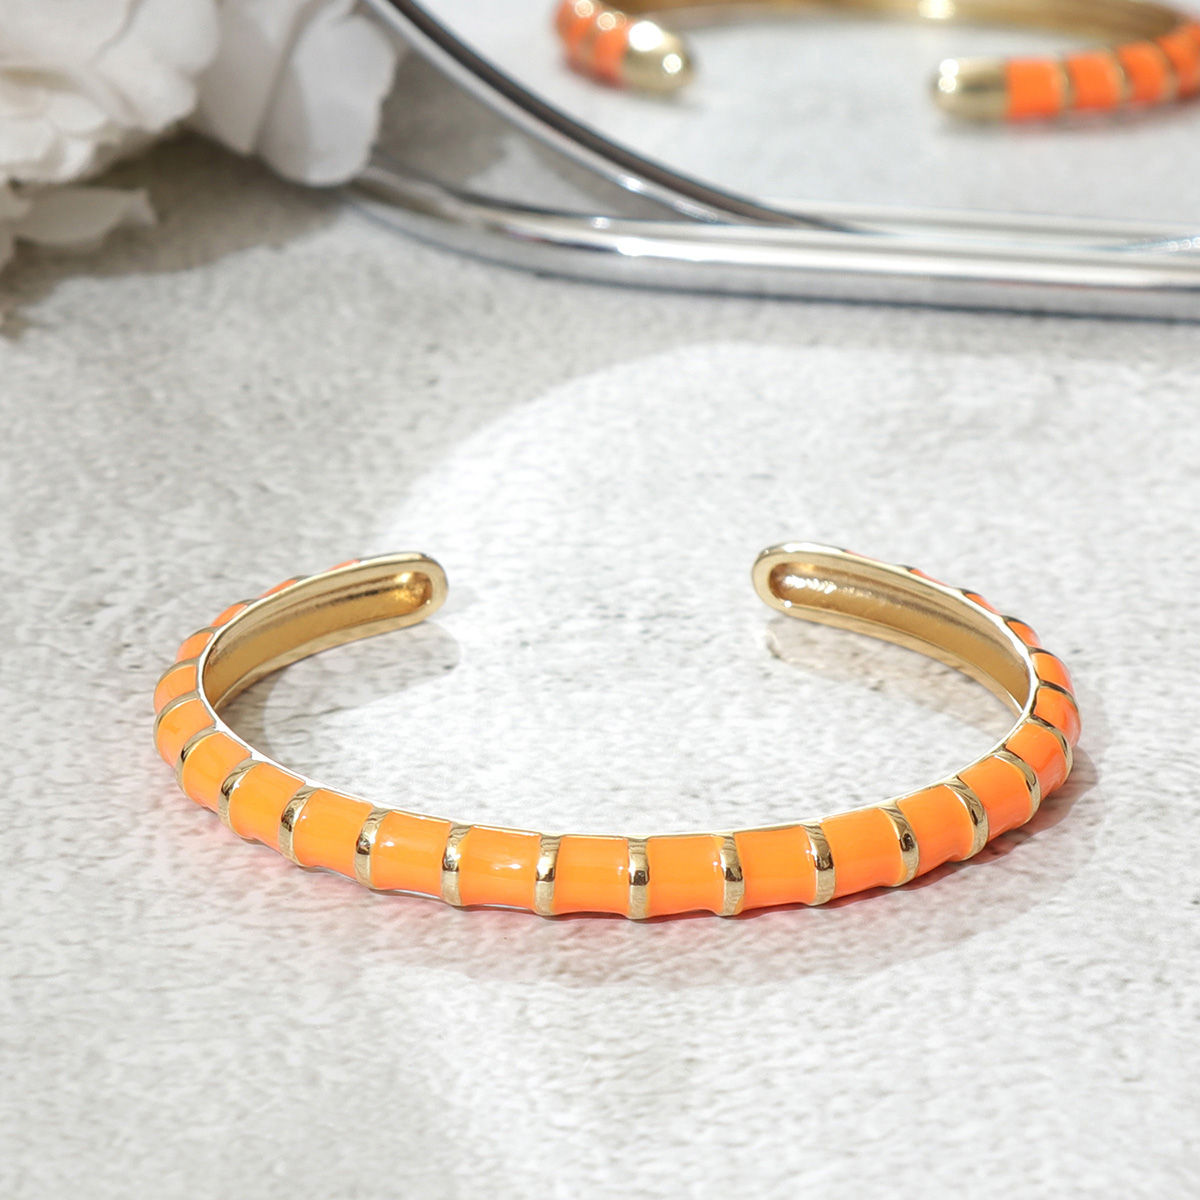 Elegant Stylish Orange Bracelet